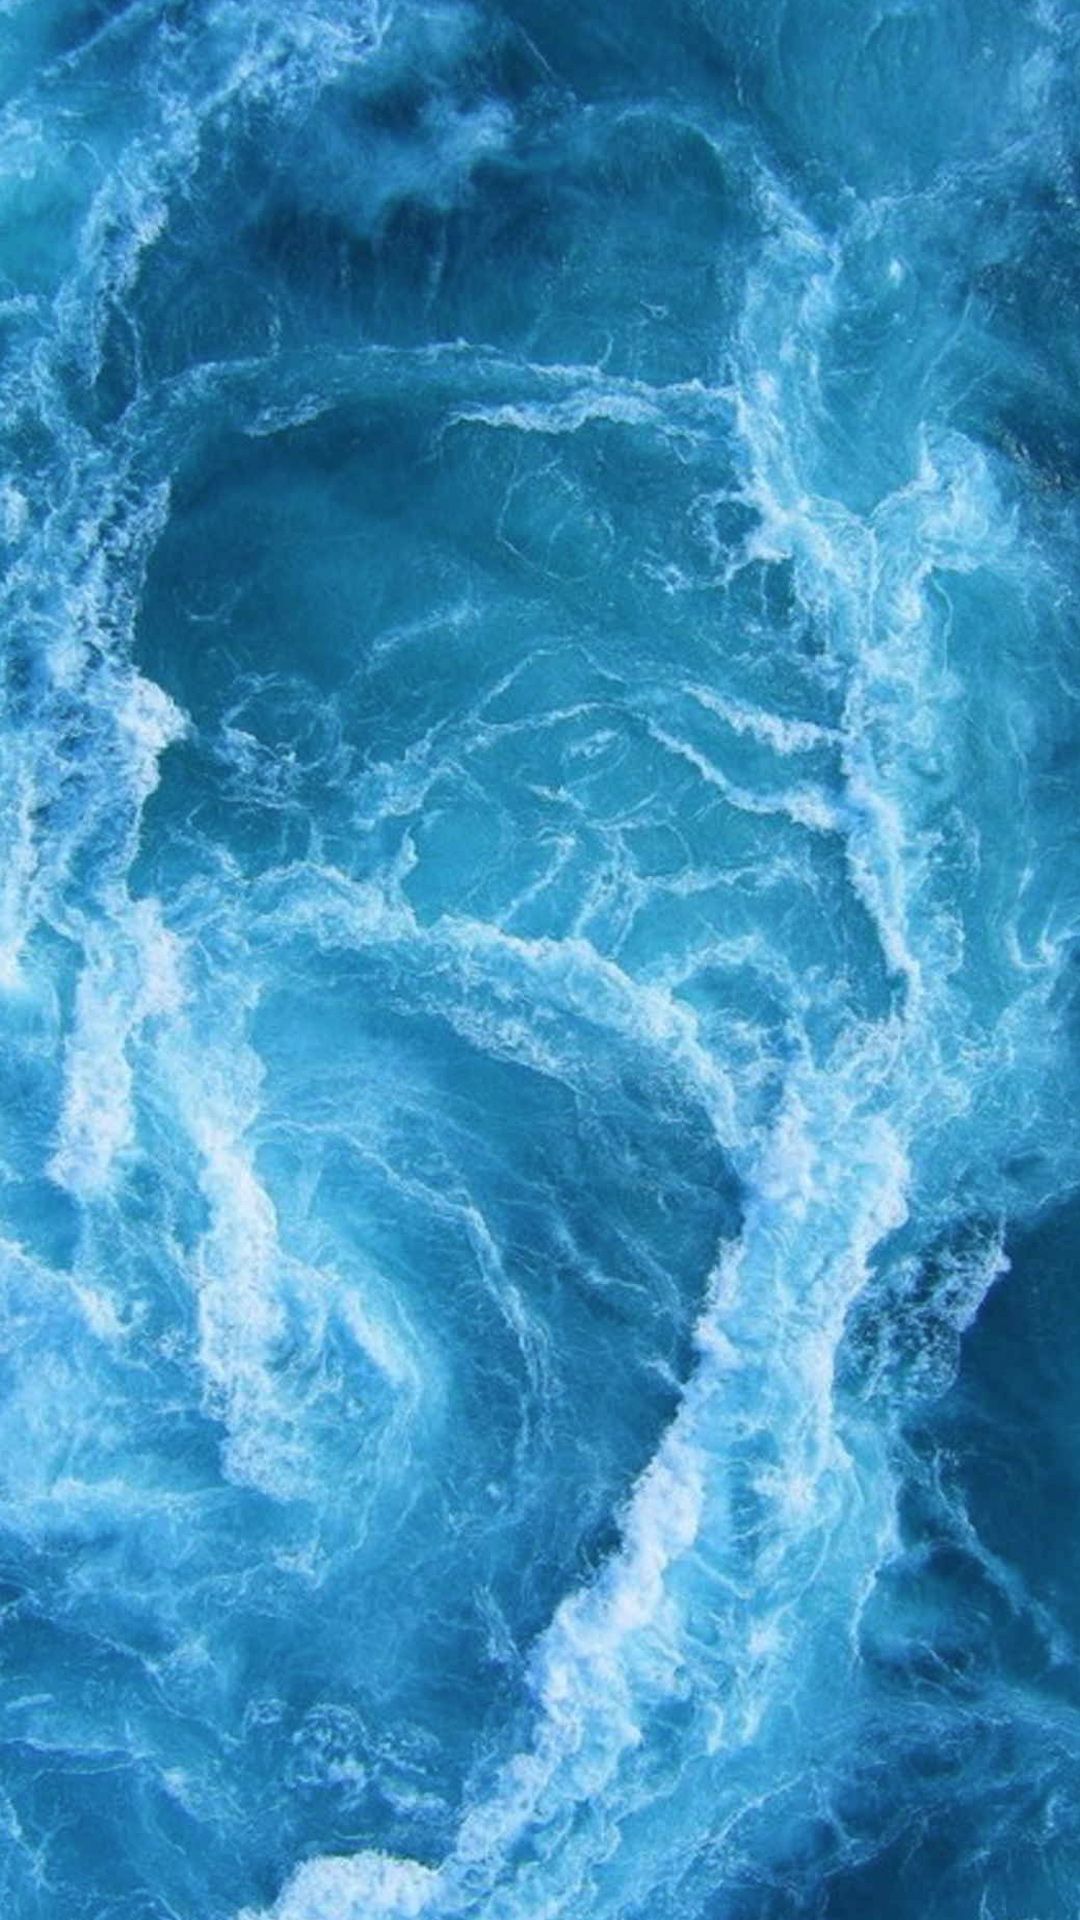 Swirling Blue Ocean Waves #iPhone #6 #wallpaper | iPhone 6 ...